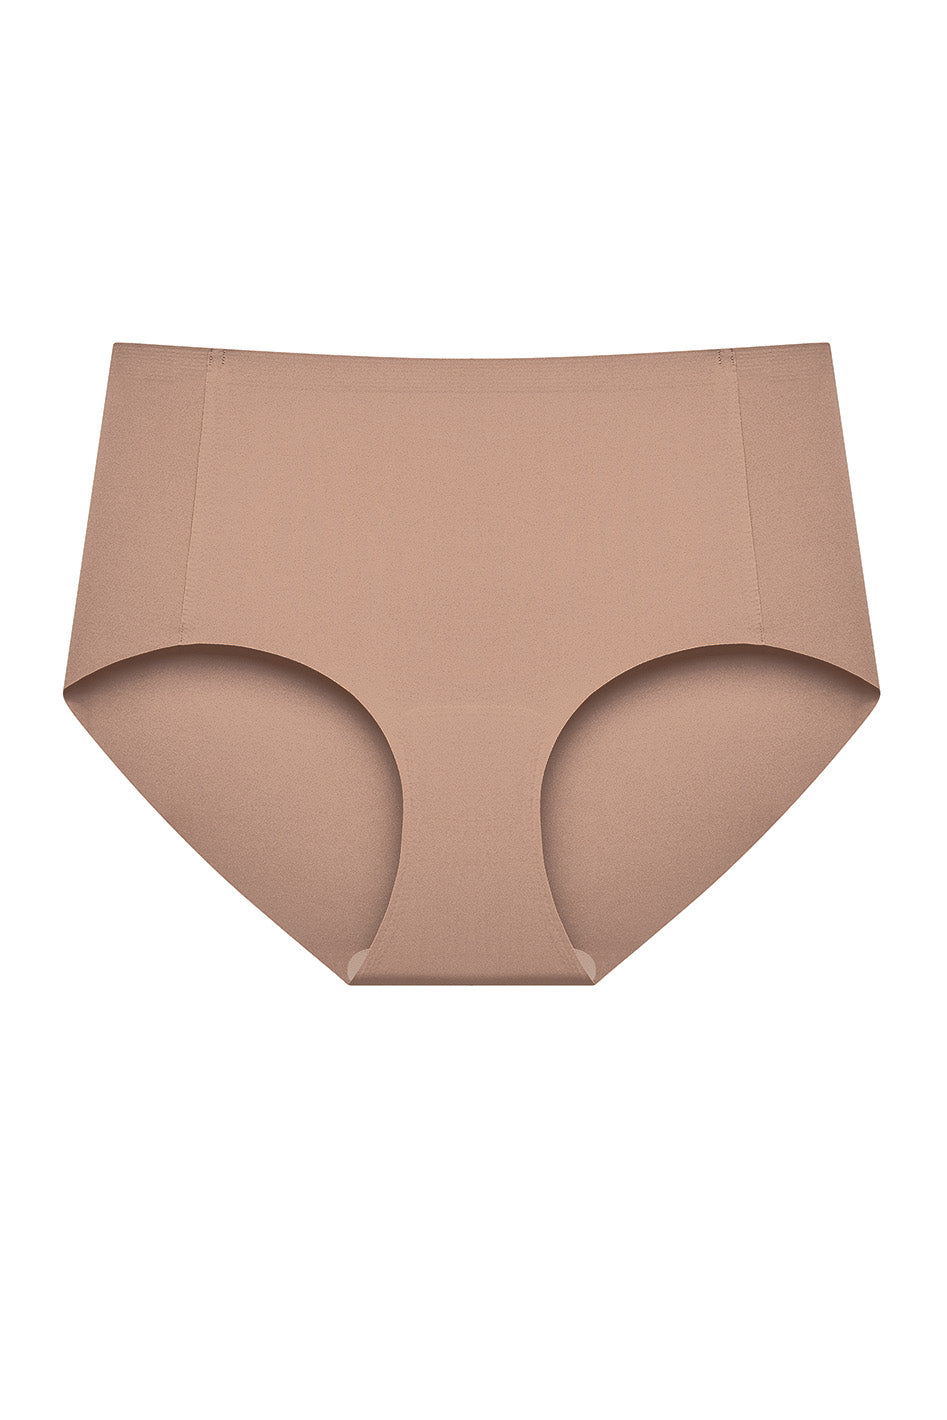 Seamless Underwear: Shop Now in US & Canada - Understance